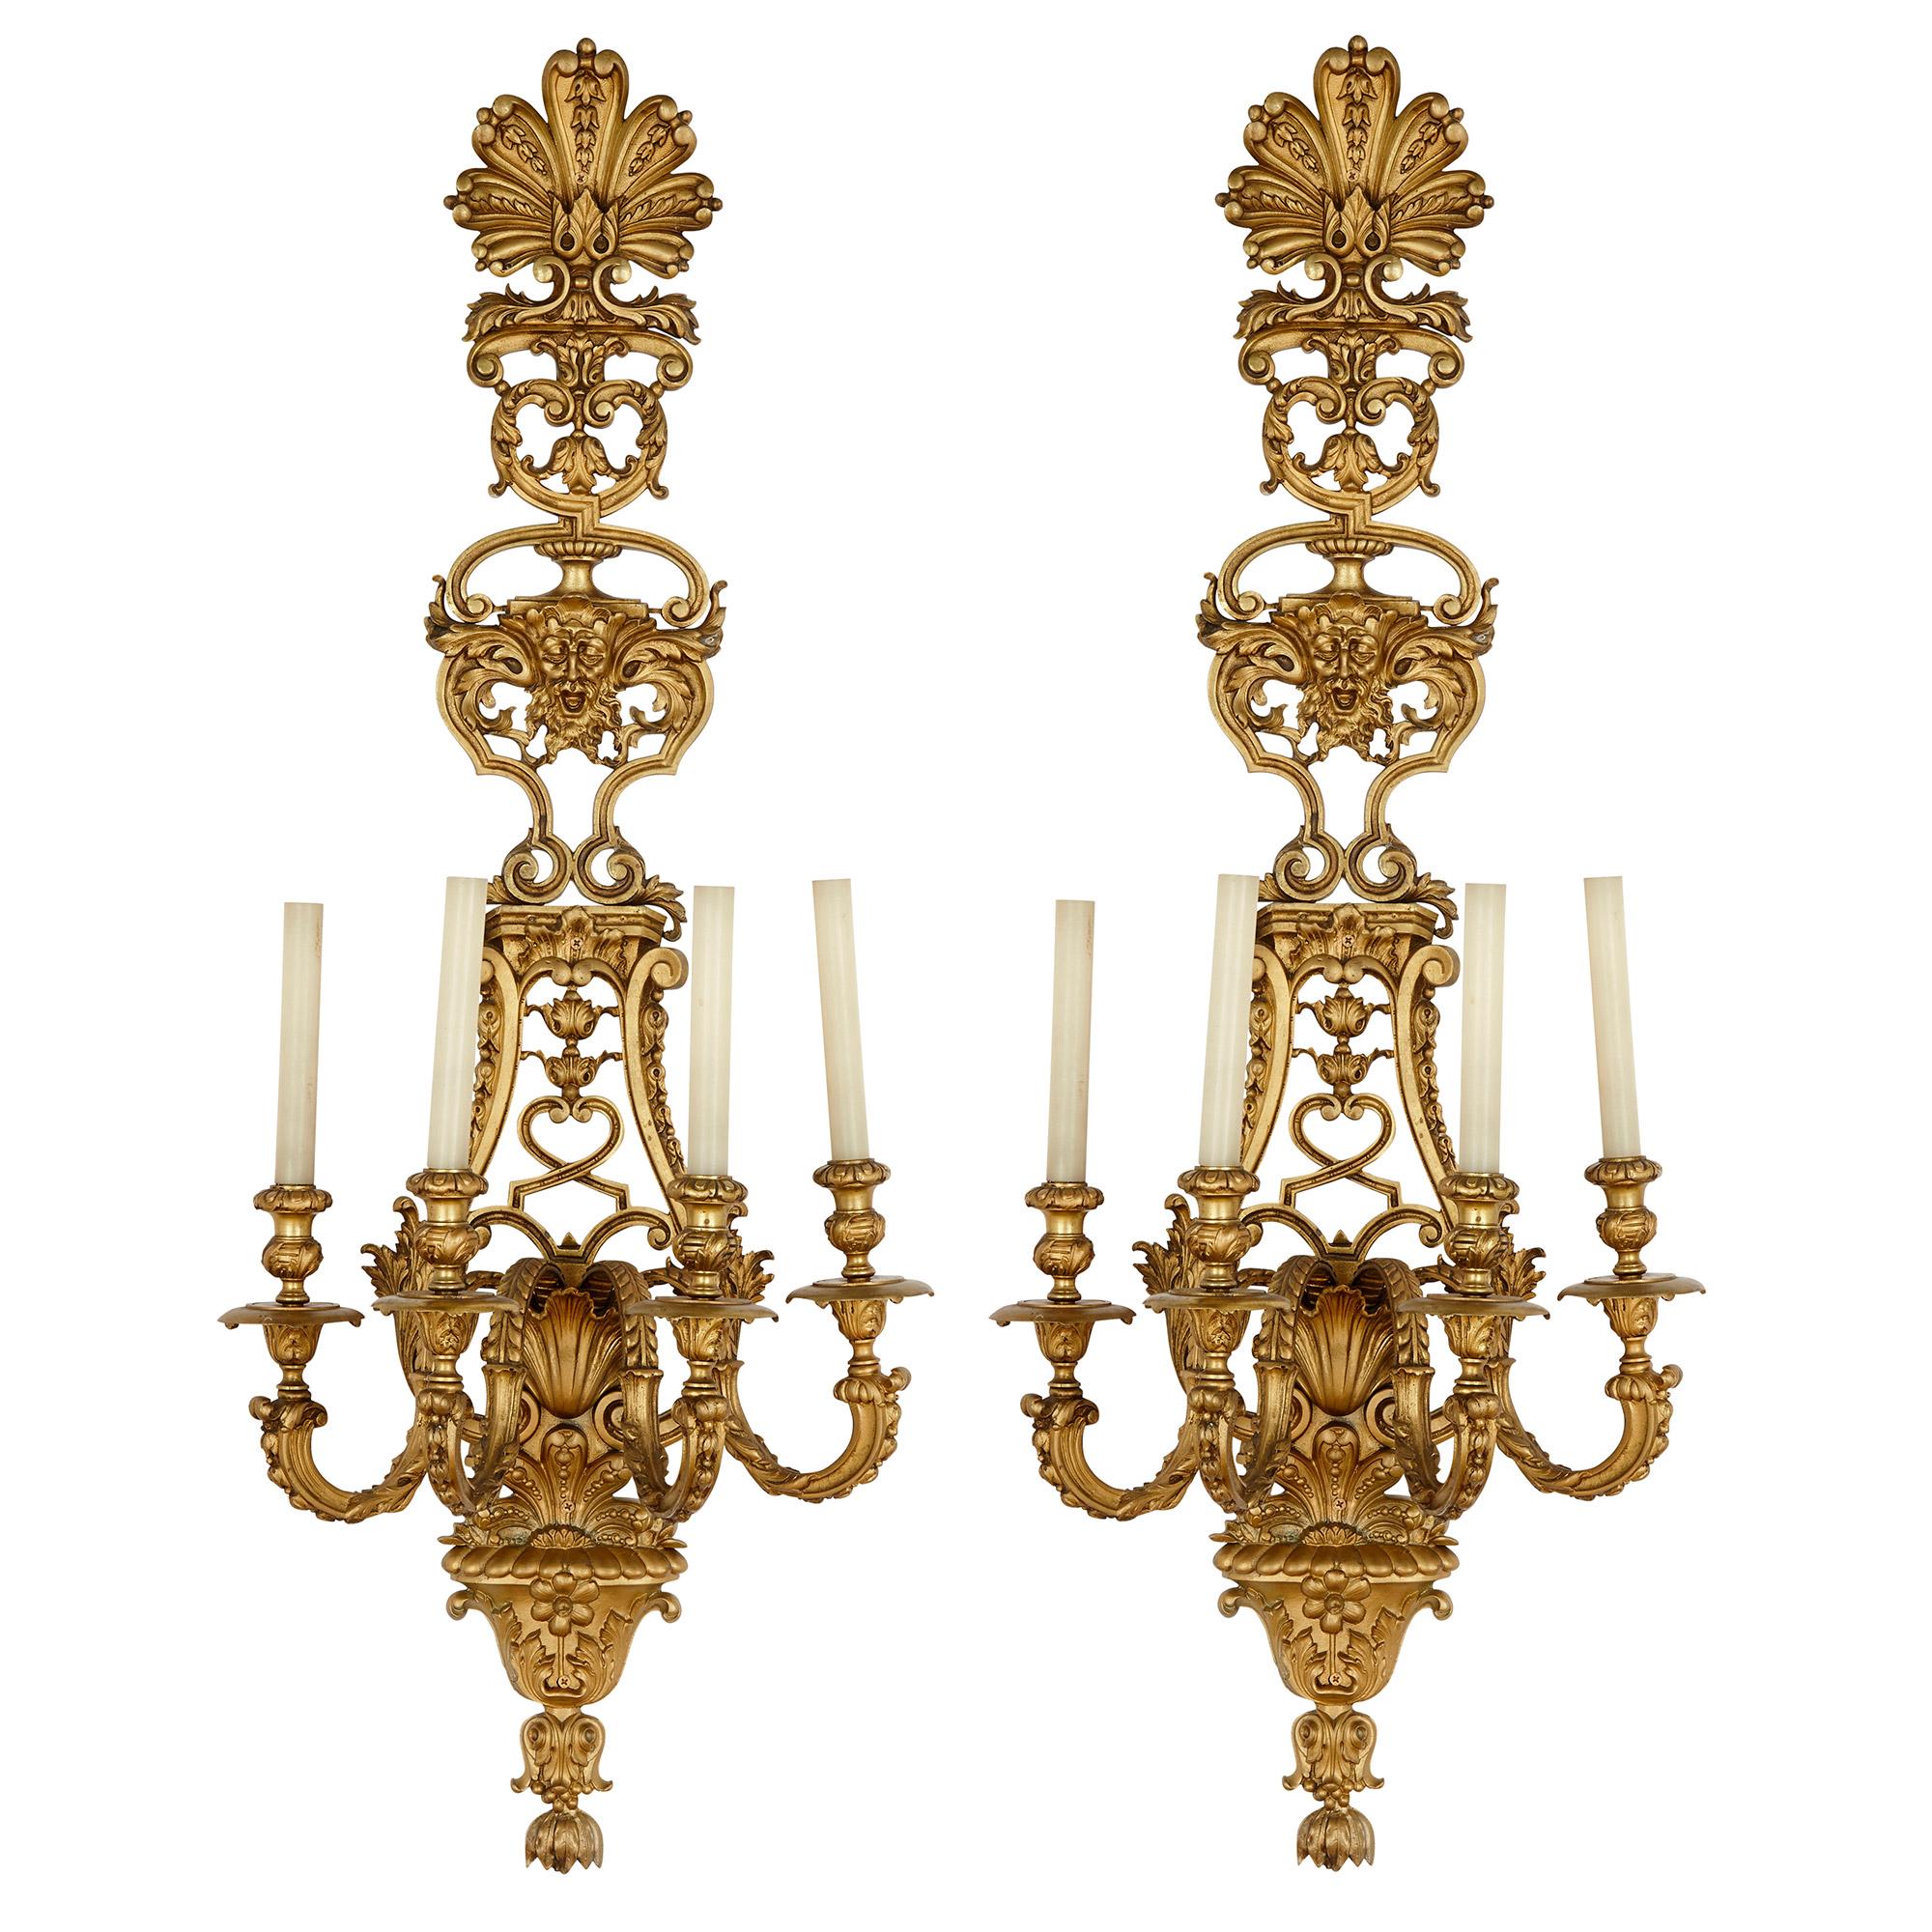 Les appliques en bronze doré de ce lot de quatre sont conçues dans le magnifique style Regency, la manière d'art décoratif qui se rapproche le plus du début du Rococo tout en trahissant l'influence persistante de Louis XIV. Chaque applique présente